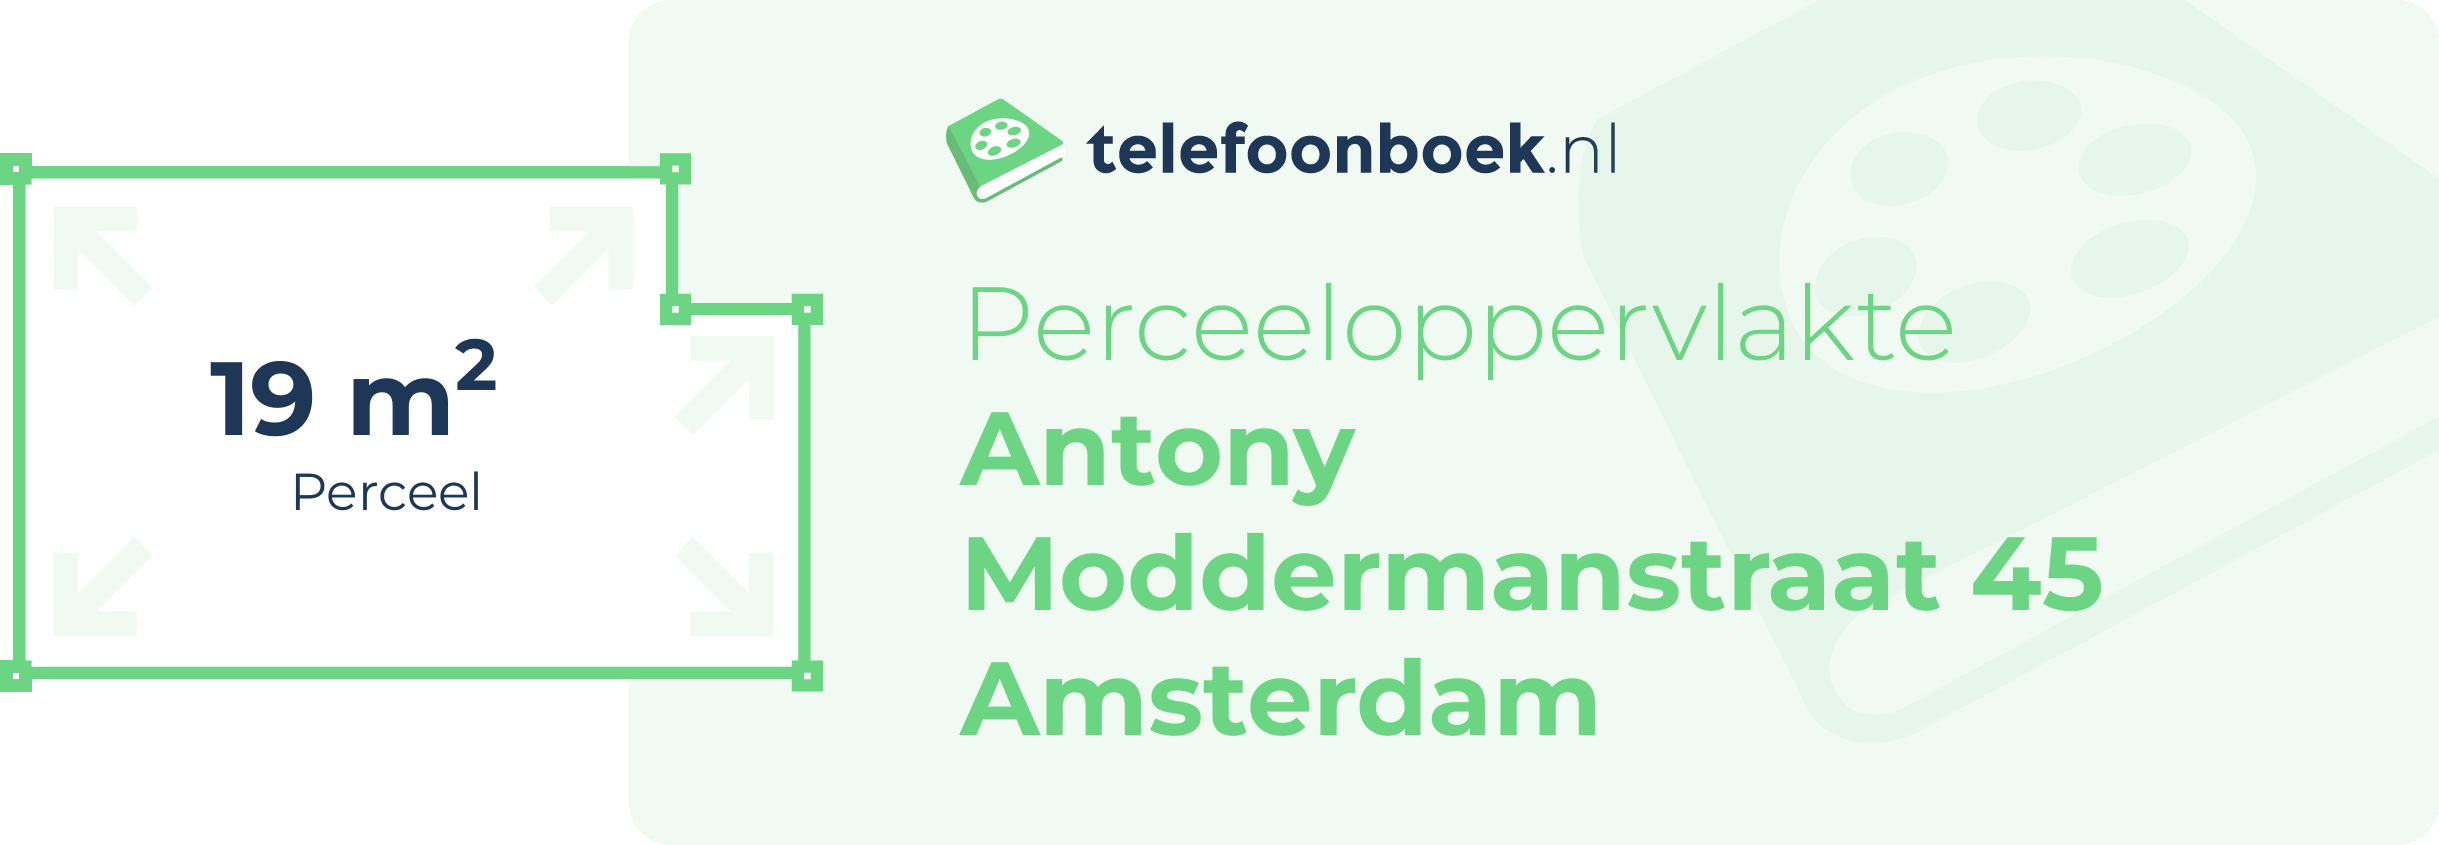 Perceeloppervlakte Antony Moddermanstraat 45 Amsterdam